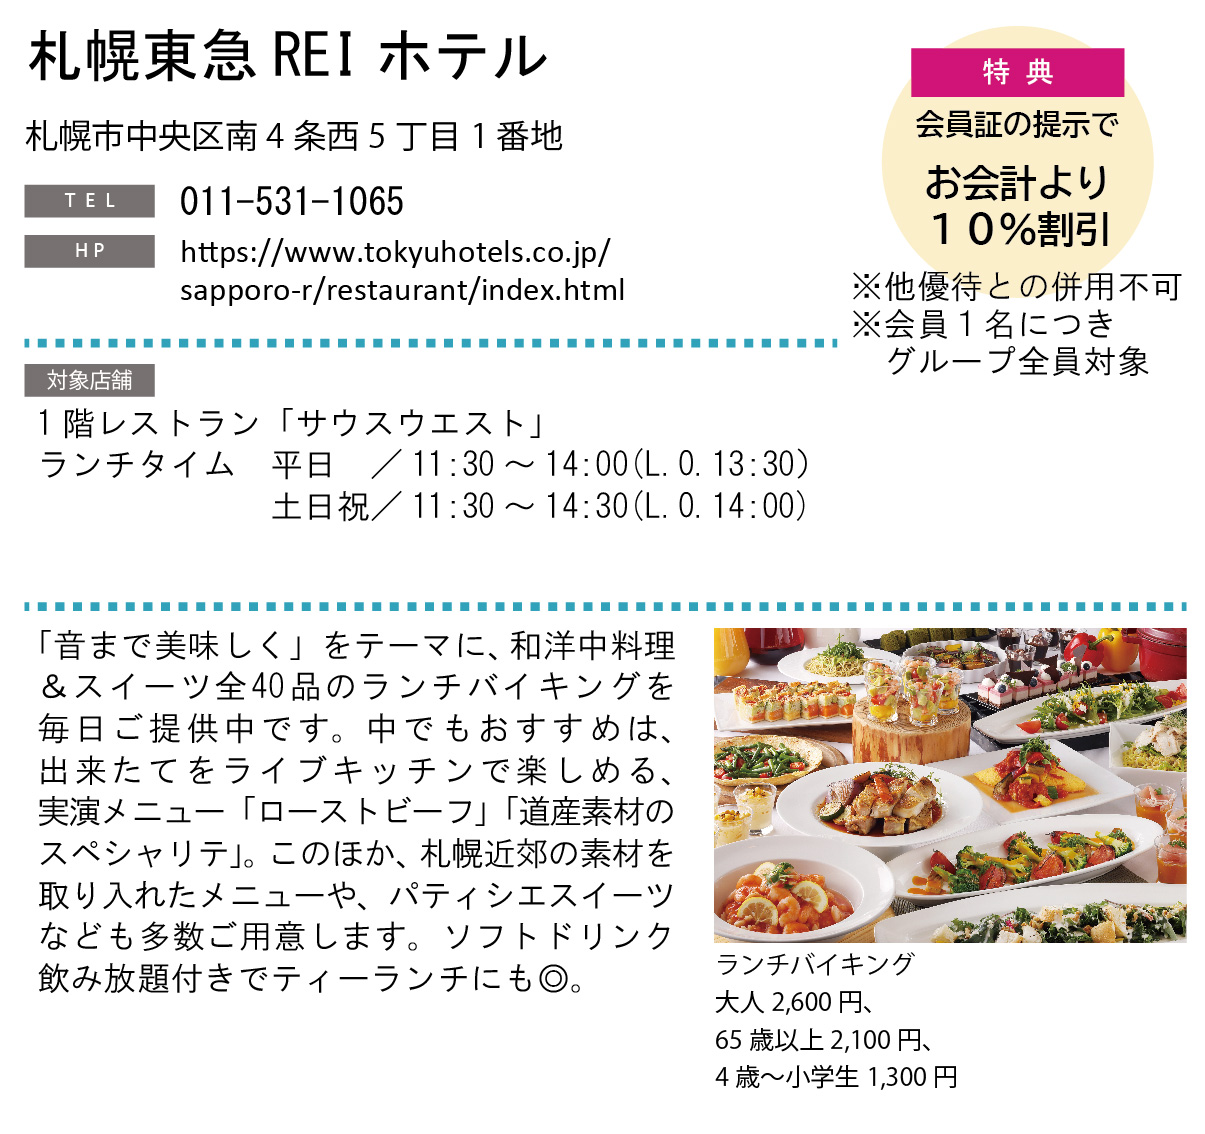 ホテルグルメ特集 Vol.19札幌東急REIホテルイメージ